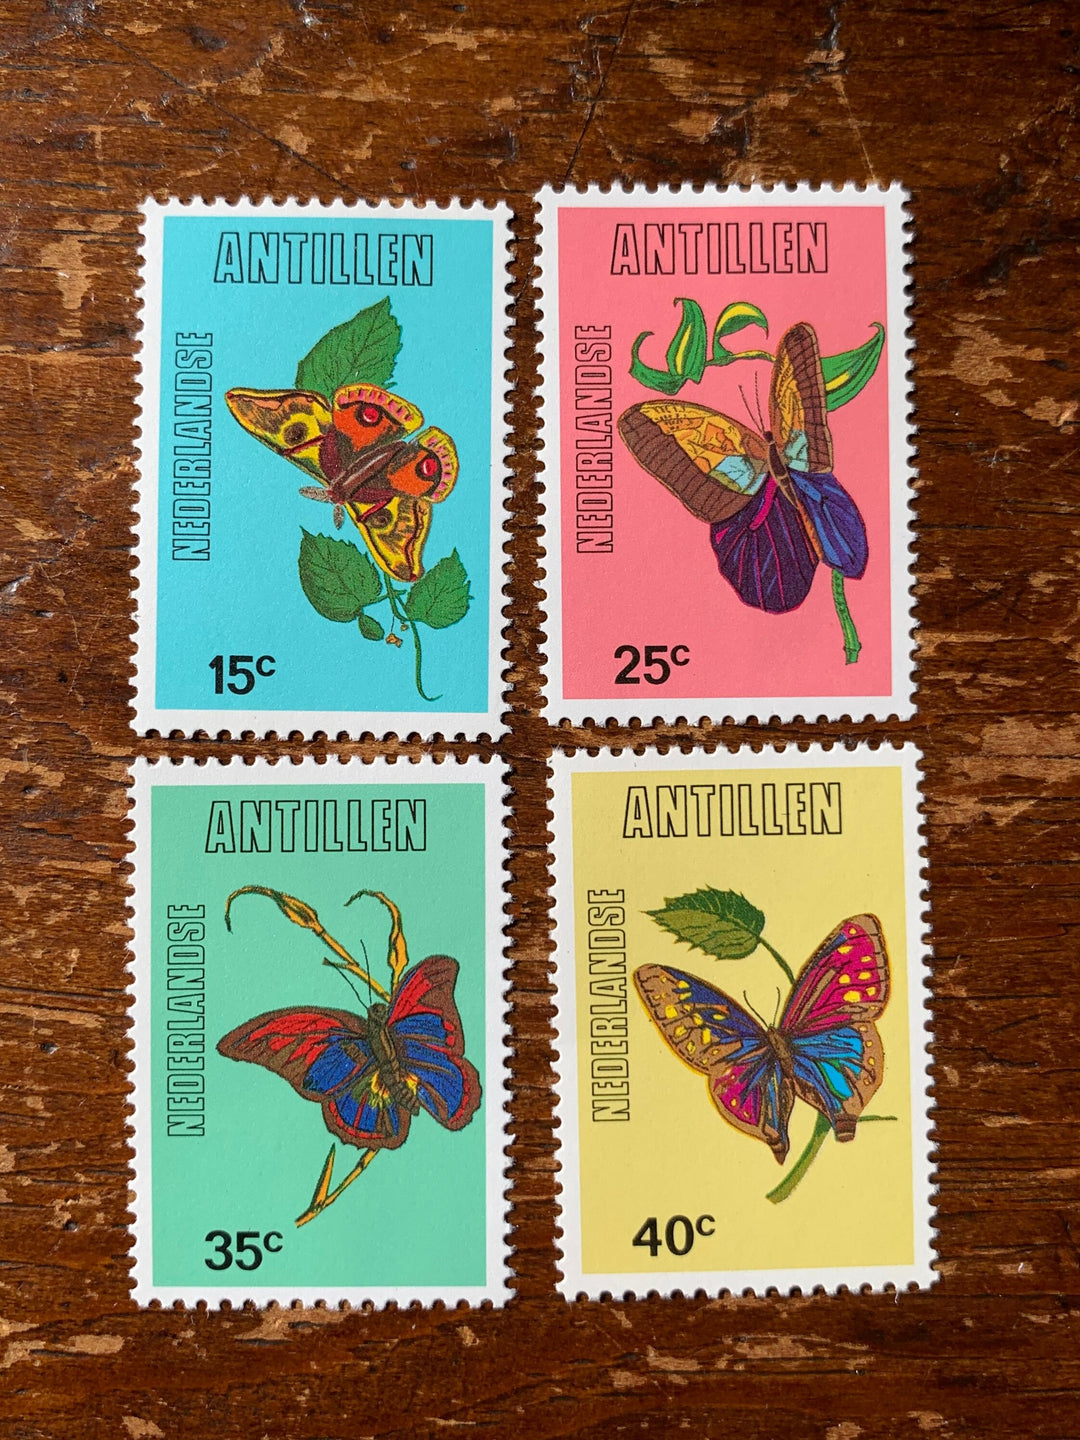 Netherlands Antilles- Original Vintage Postage Stamps 1978 Butterflies